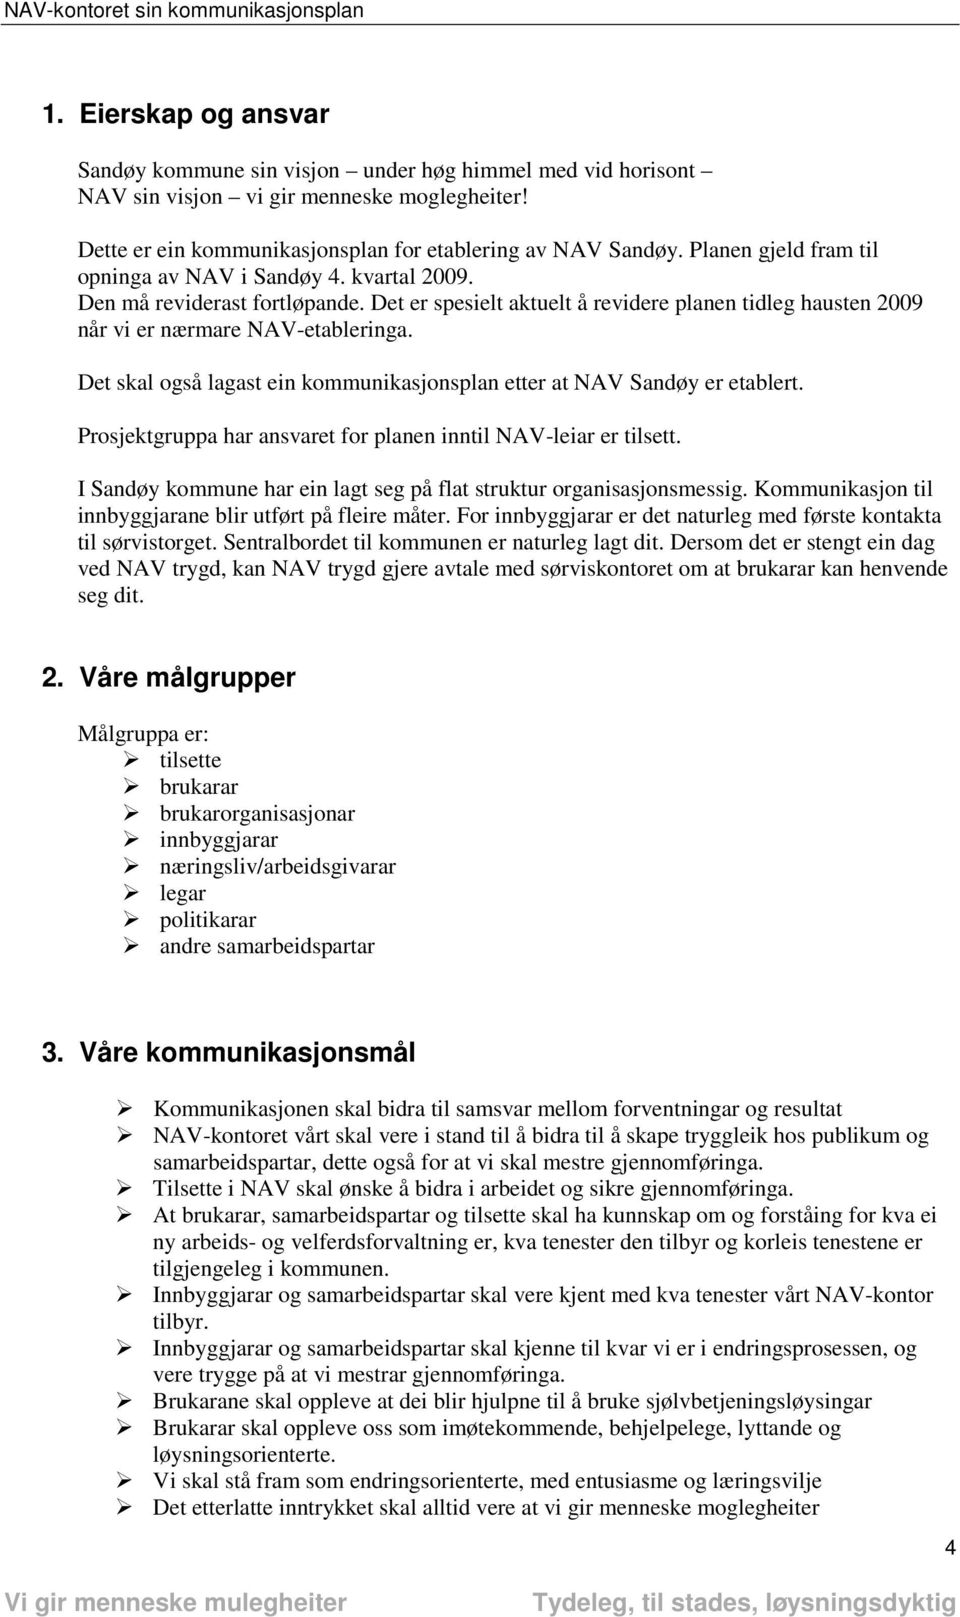 Det skal også lagast ein kommunikasjonsplan etter at NAV Sandøy er etablert. Prosjektgruppa har ansvaret for planen inntil er tilsett.